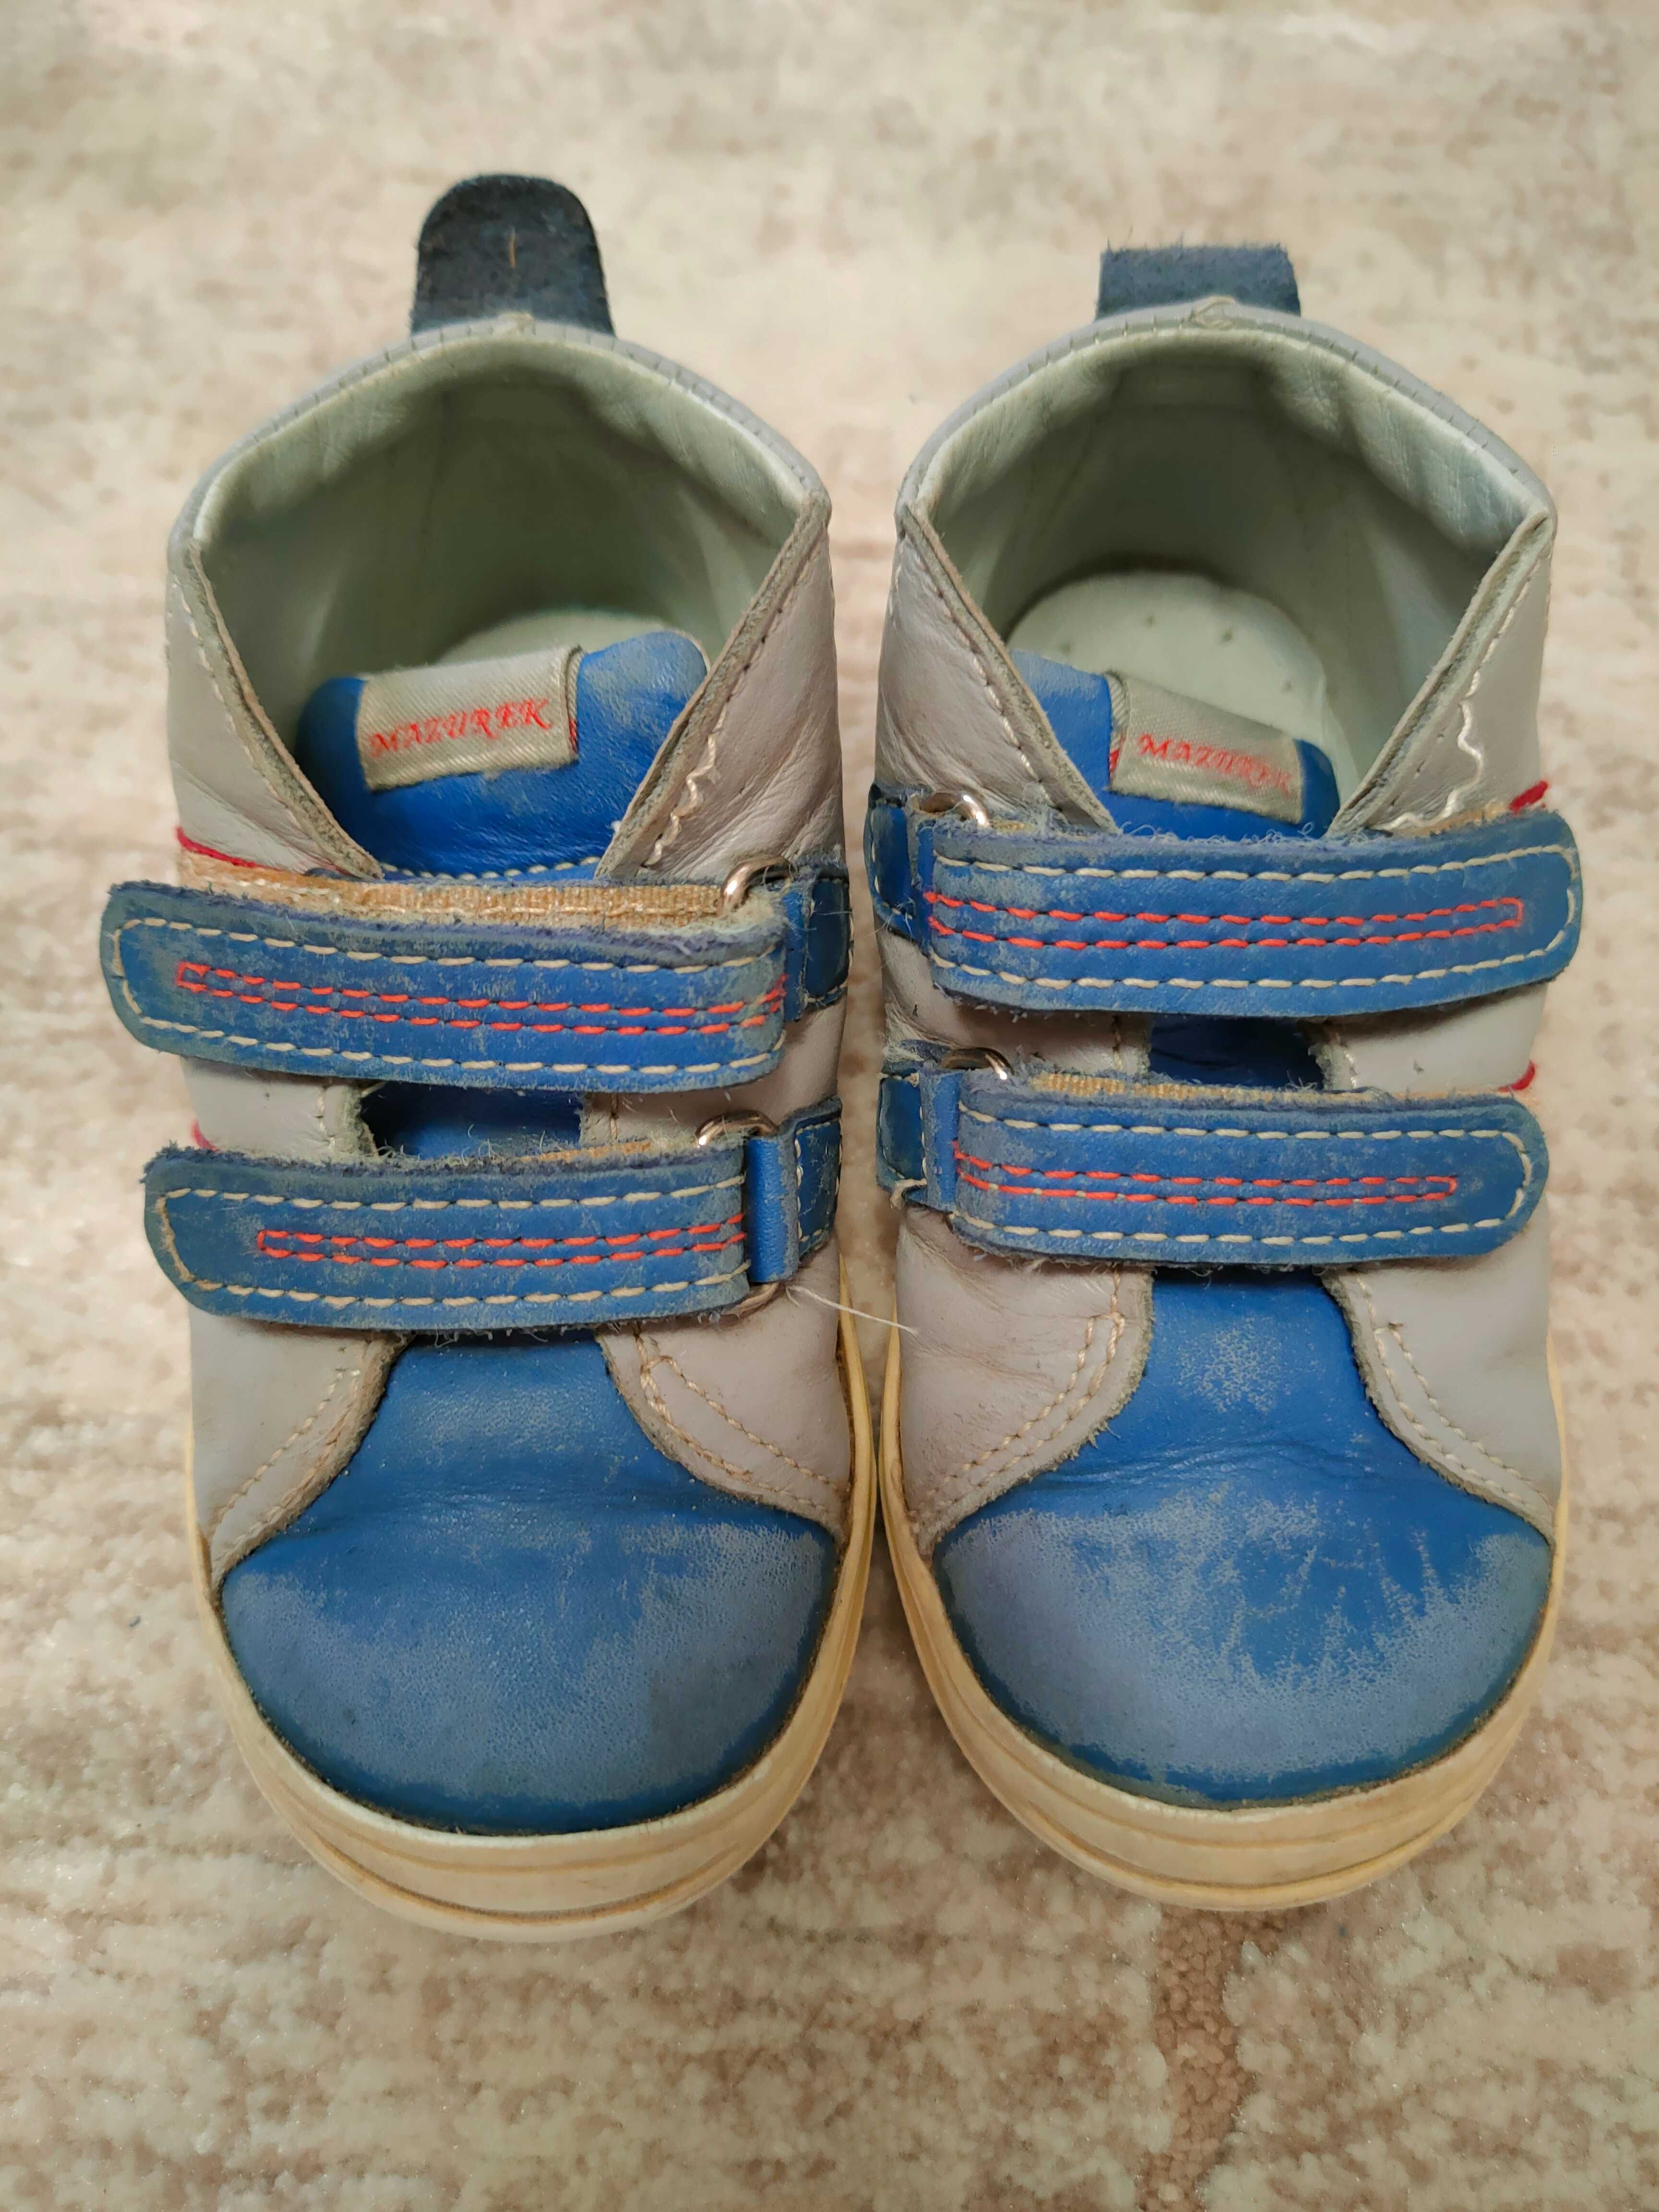 Buty Mazurek 22 dla chłopca buciki skórzane wiosenne na wiosnę